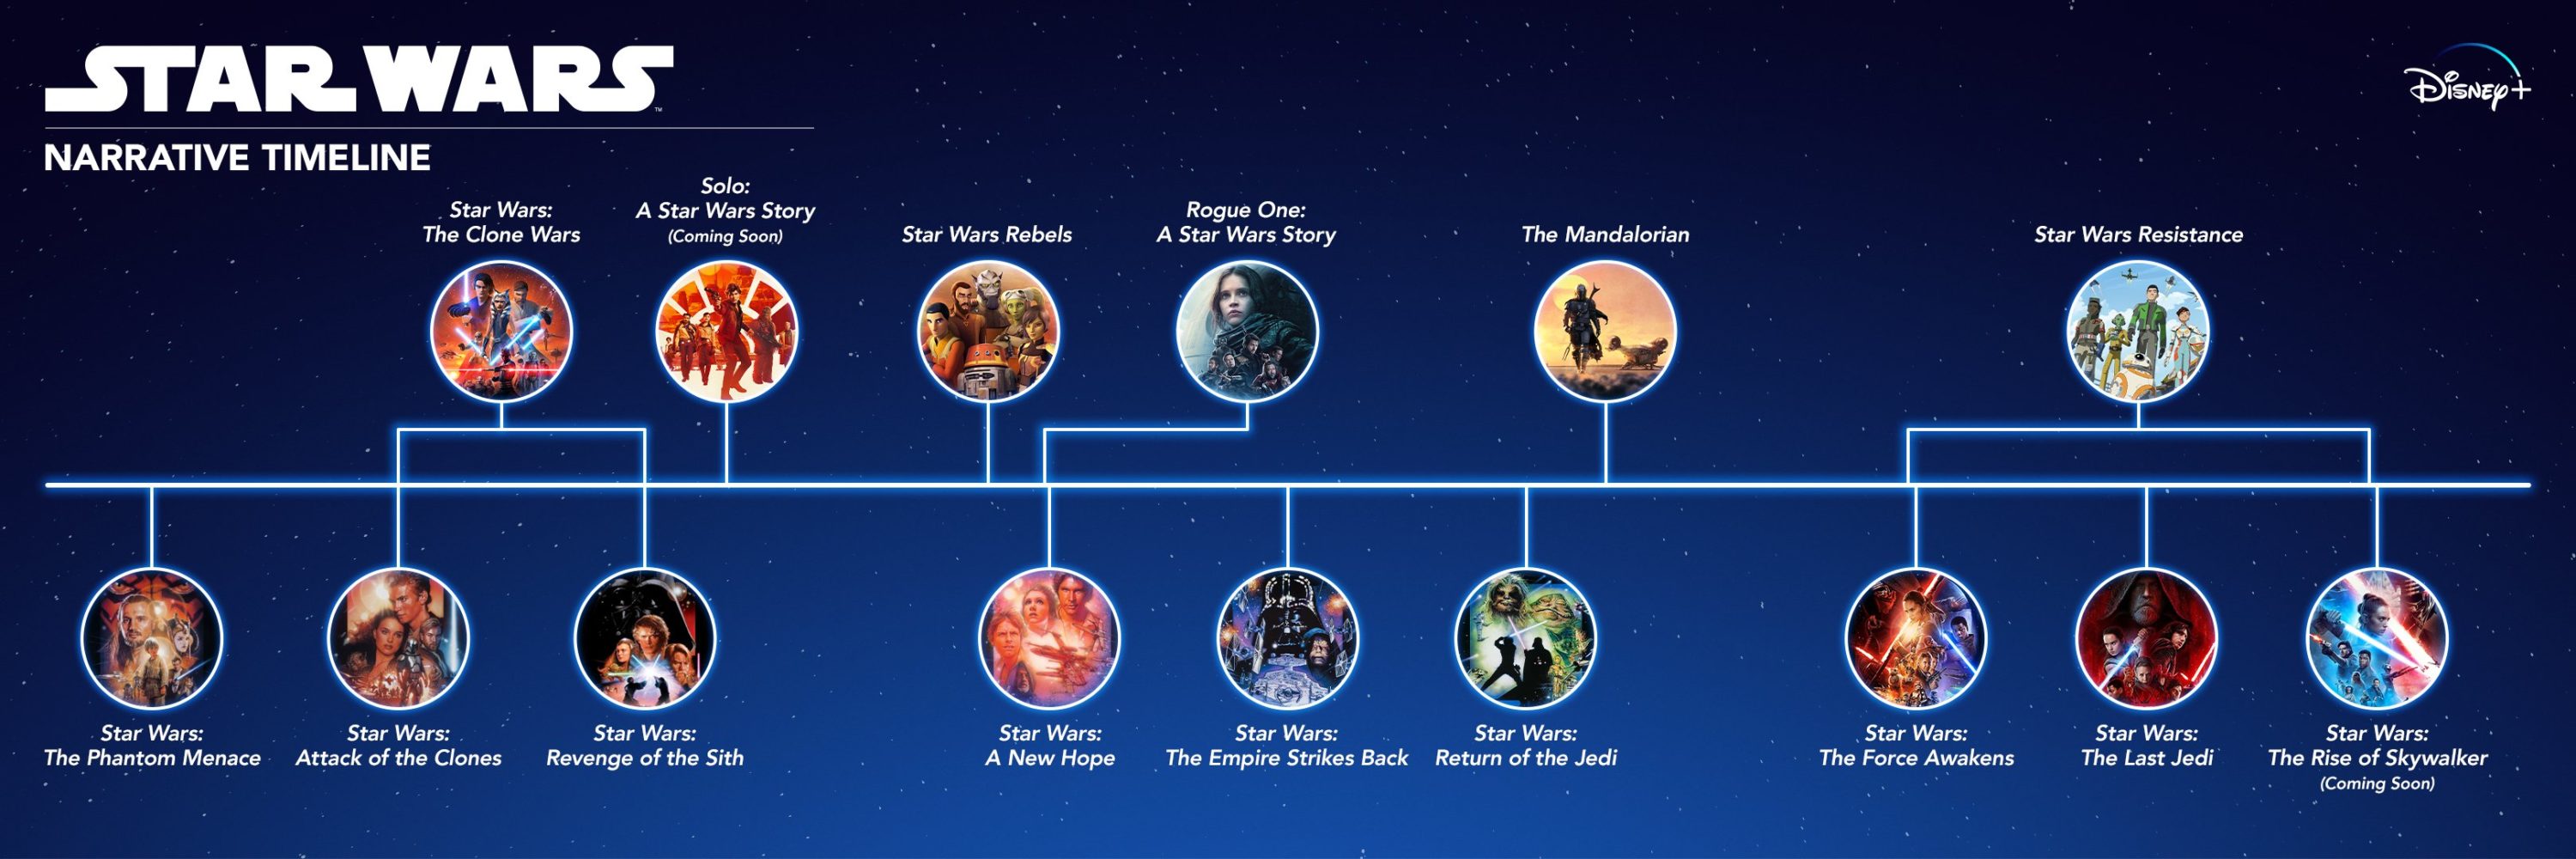 Star Wars Narrative Timeline